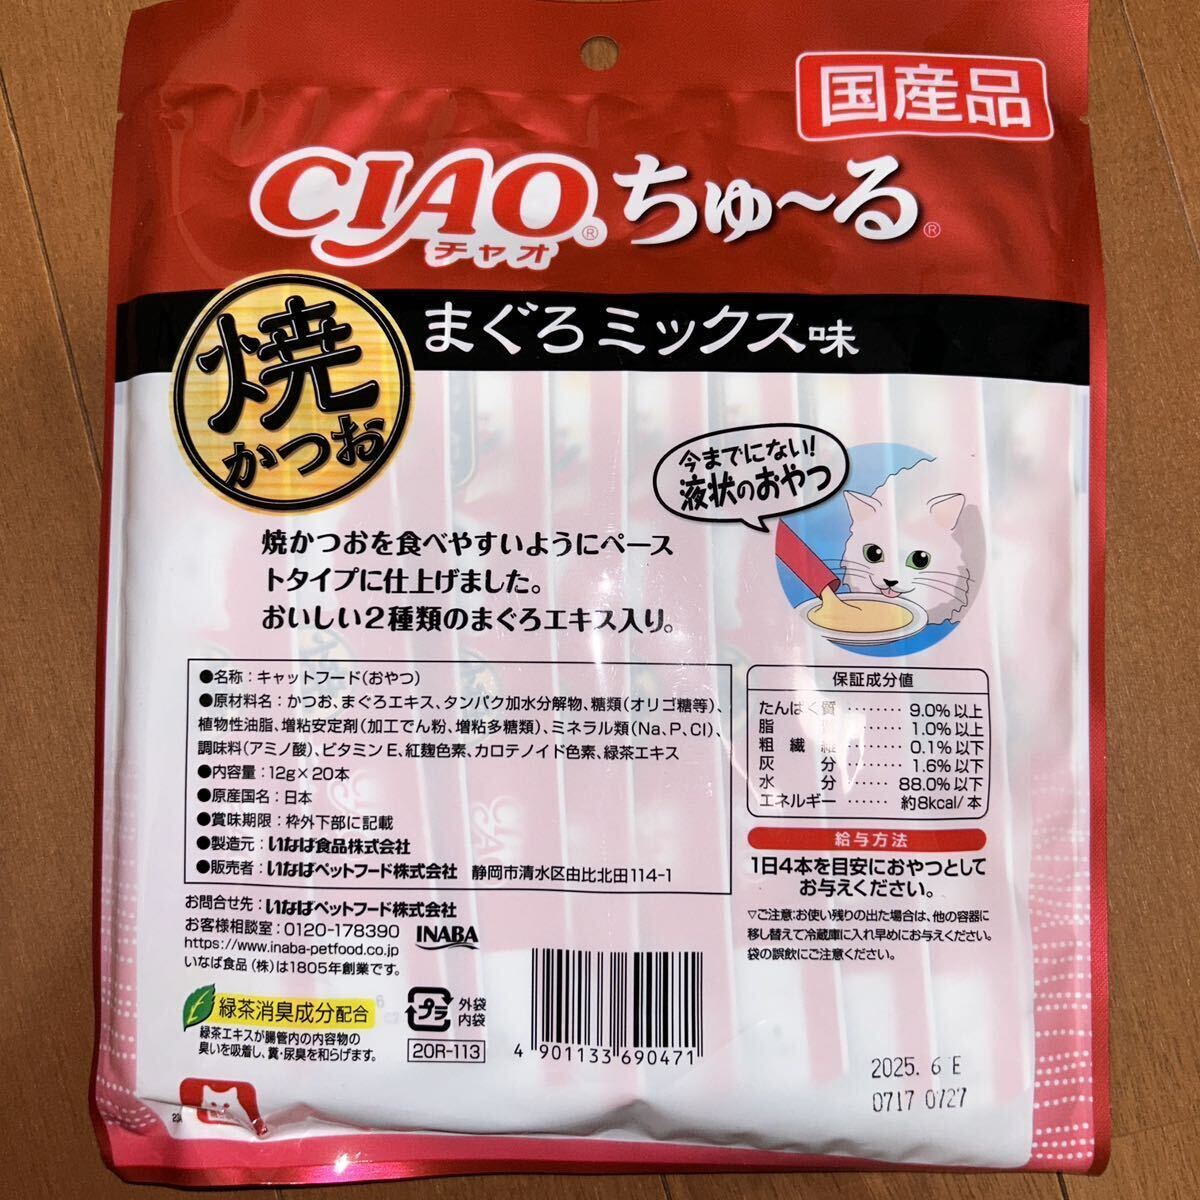 i..CIAO Ciao ..~...-.. и .... Mix тест 12g×20шт.@×2 пакет кошка для жидкость форма закуска местного производства товар сохранение стоимость не использование 